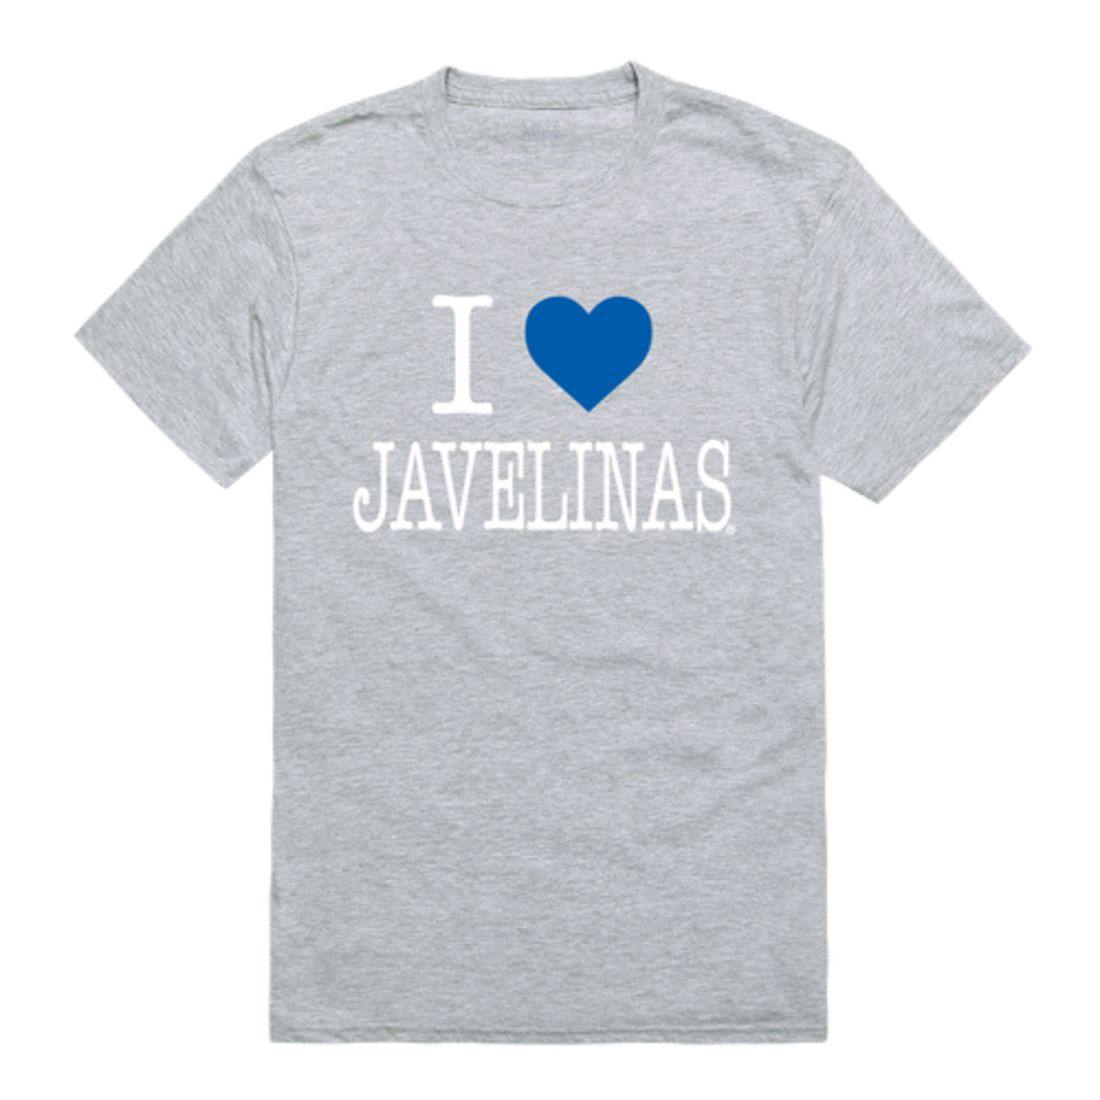 I Love TAMUK Texas A&M University - Kingsville Javelinas T-Shirt-Campus-Wardrobe